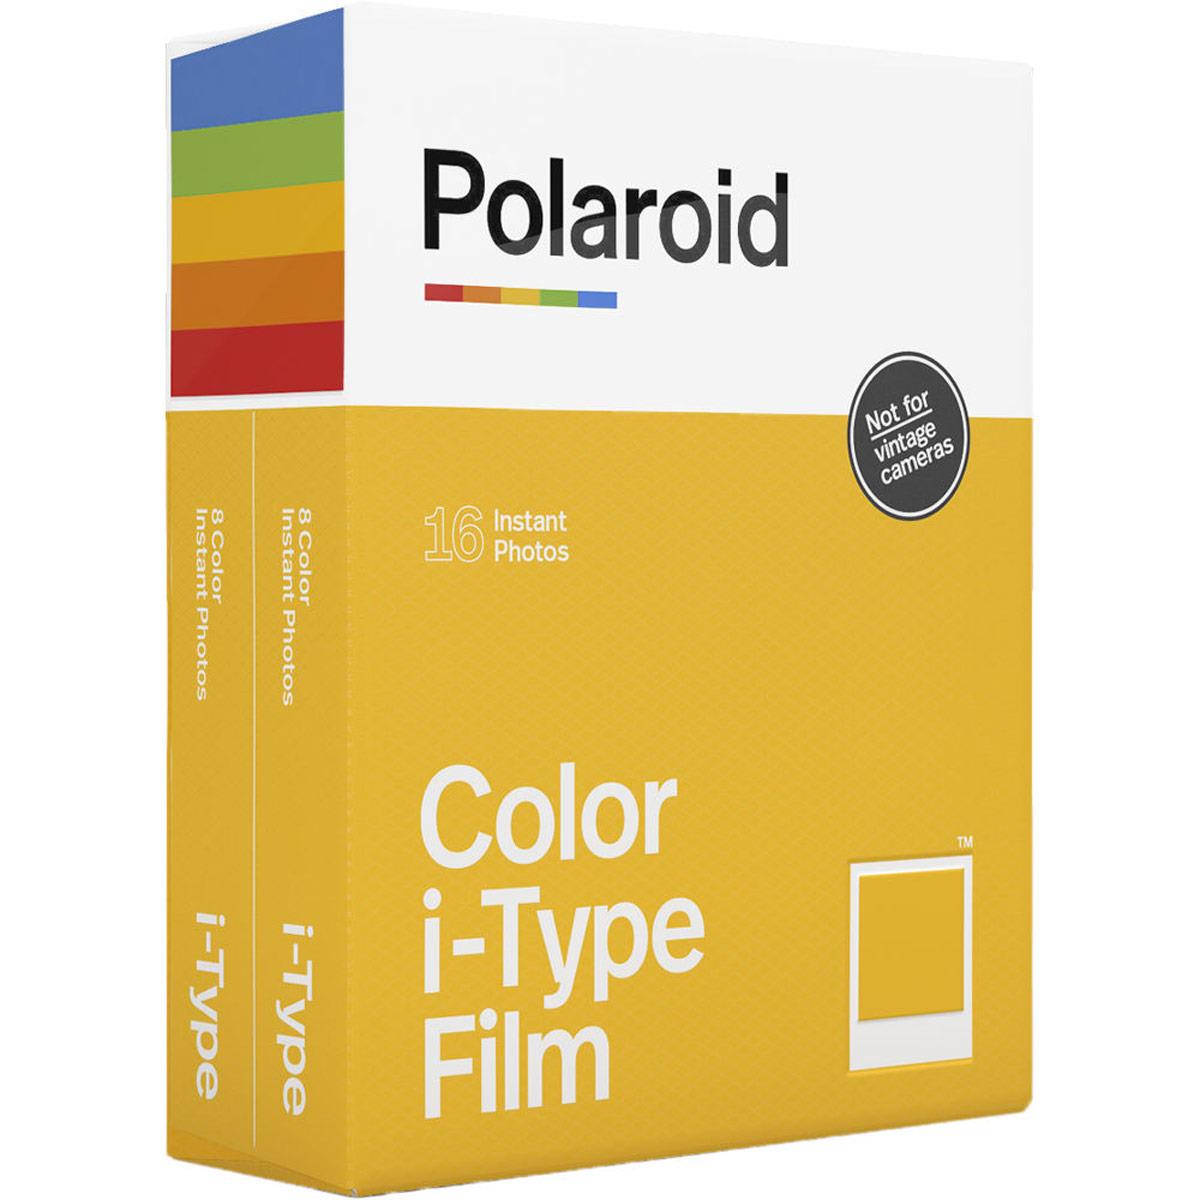 Image of Polaroid Originals Color i-Type Instant Film